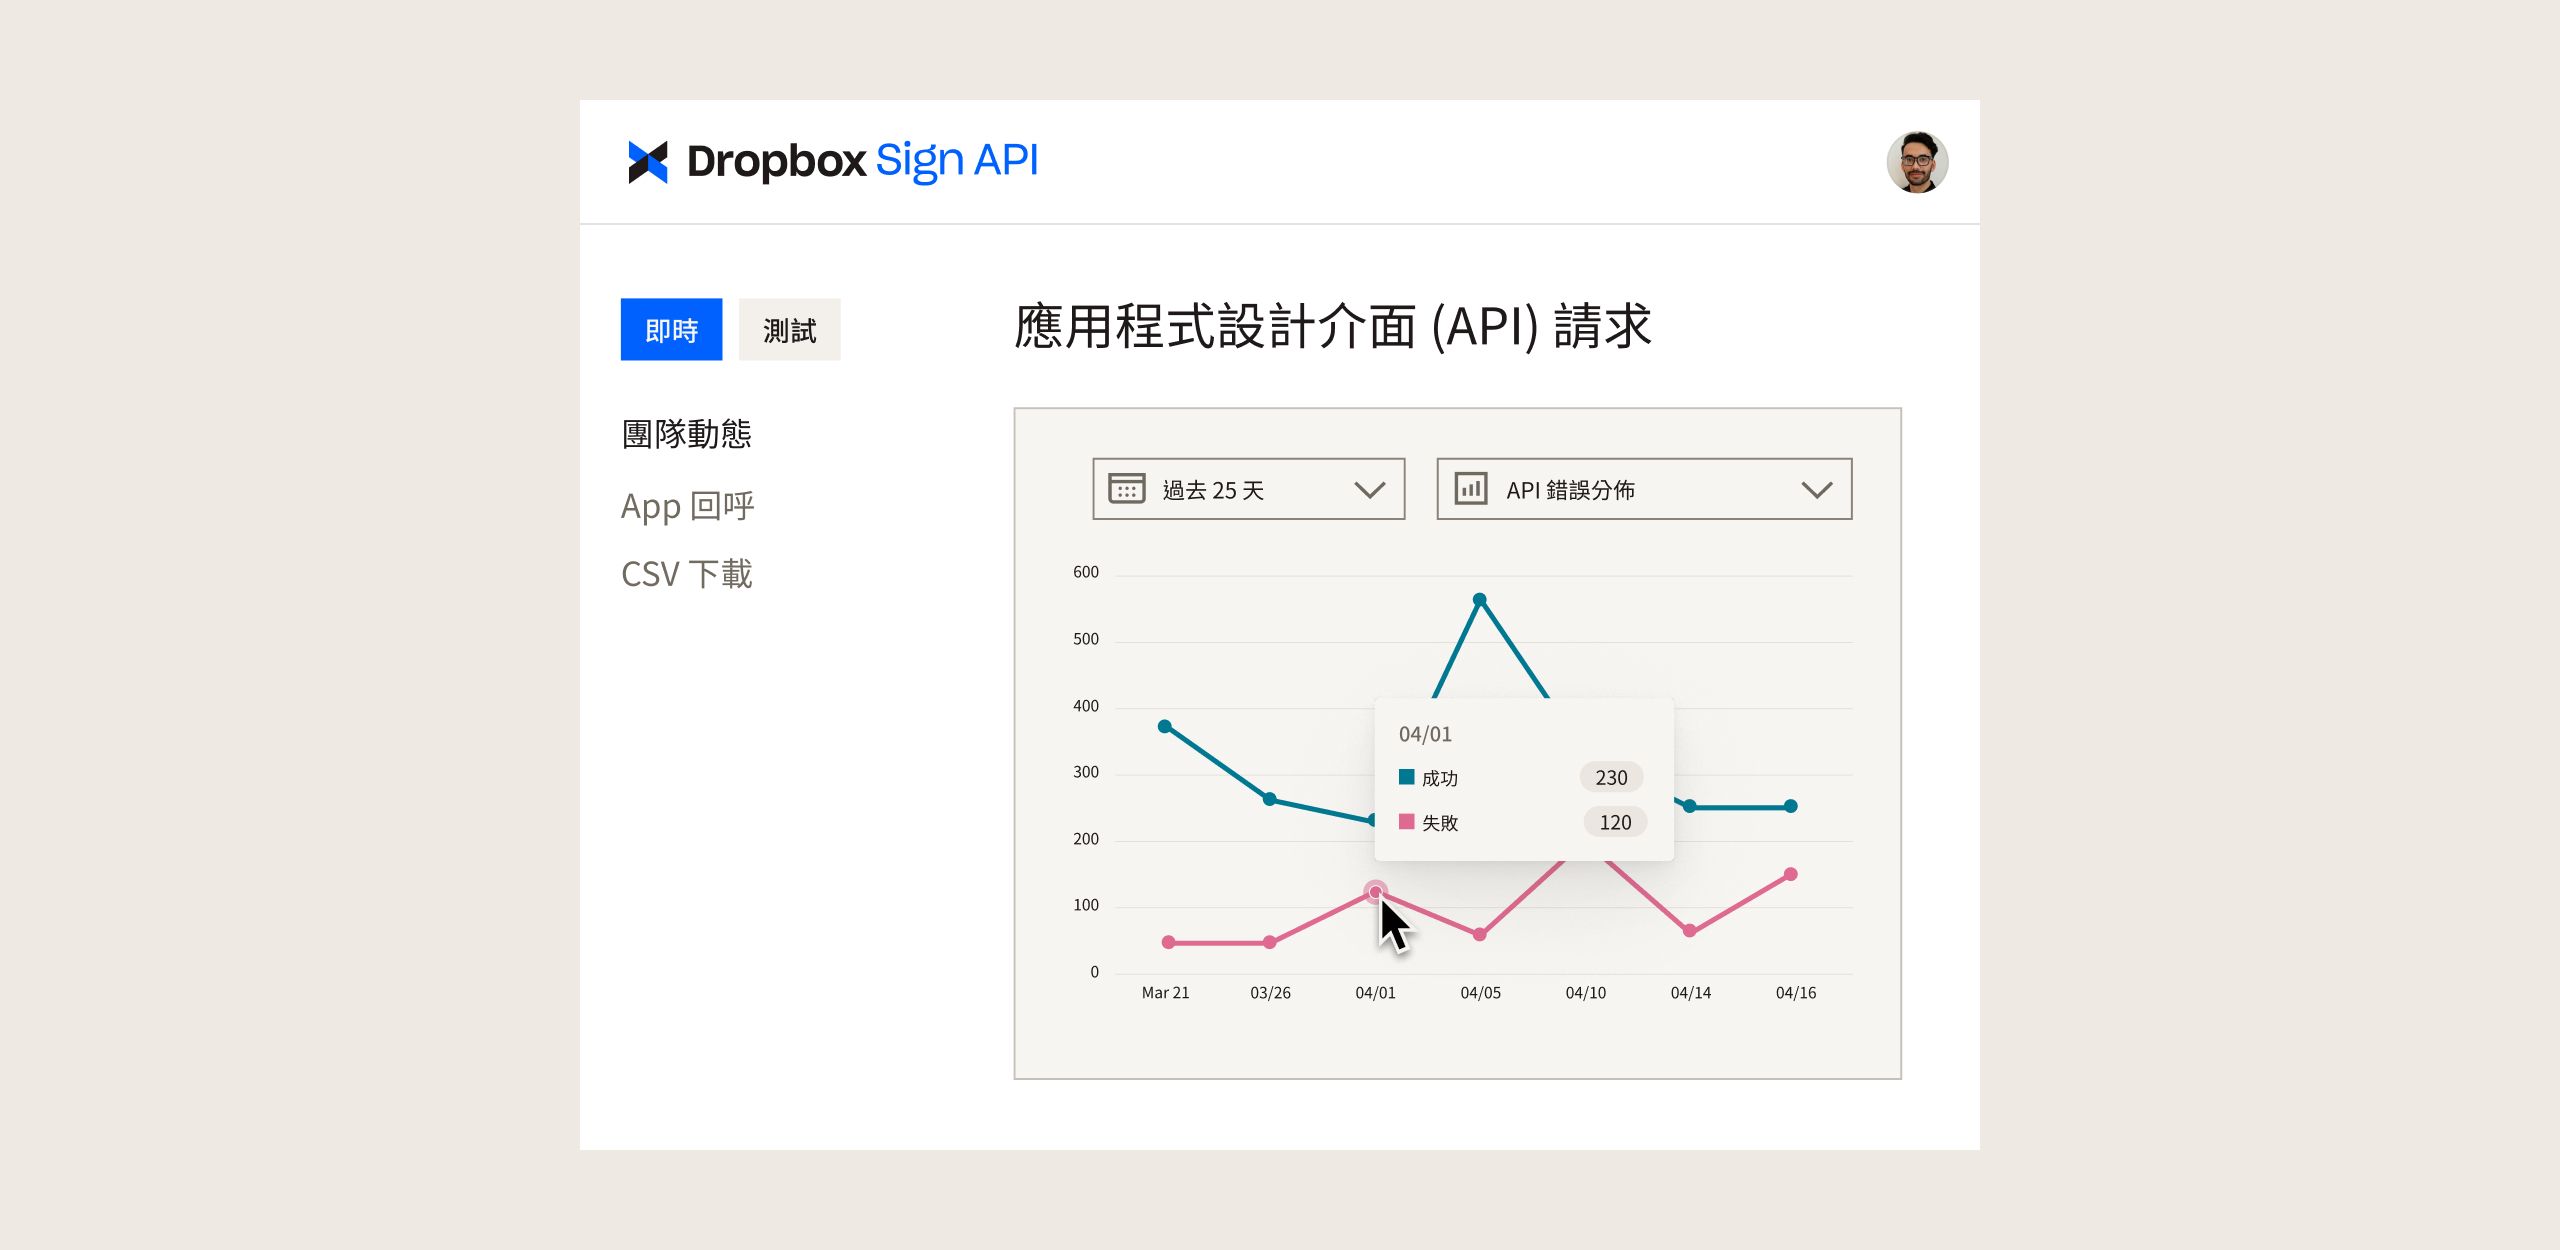 Dropbox Sign API 資訊主頁，圖表中顯示過去一段時間的 API 要求